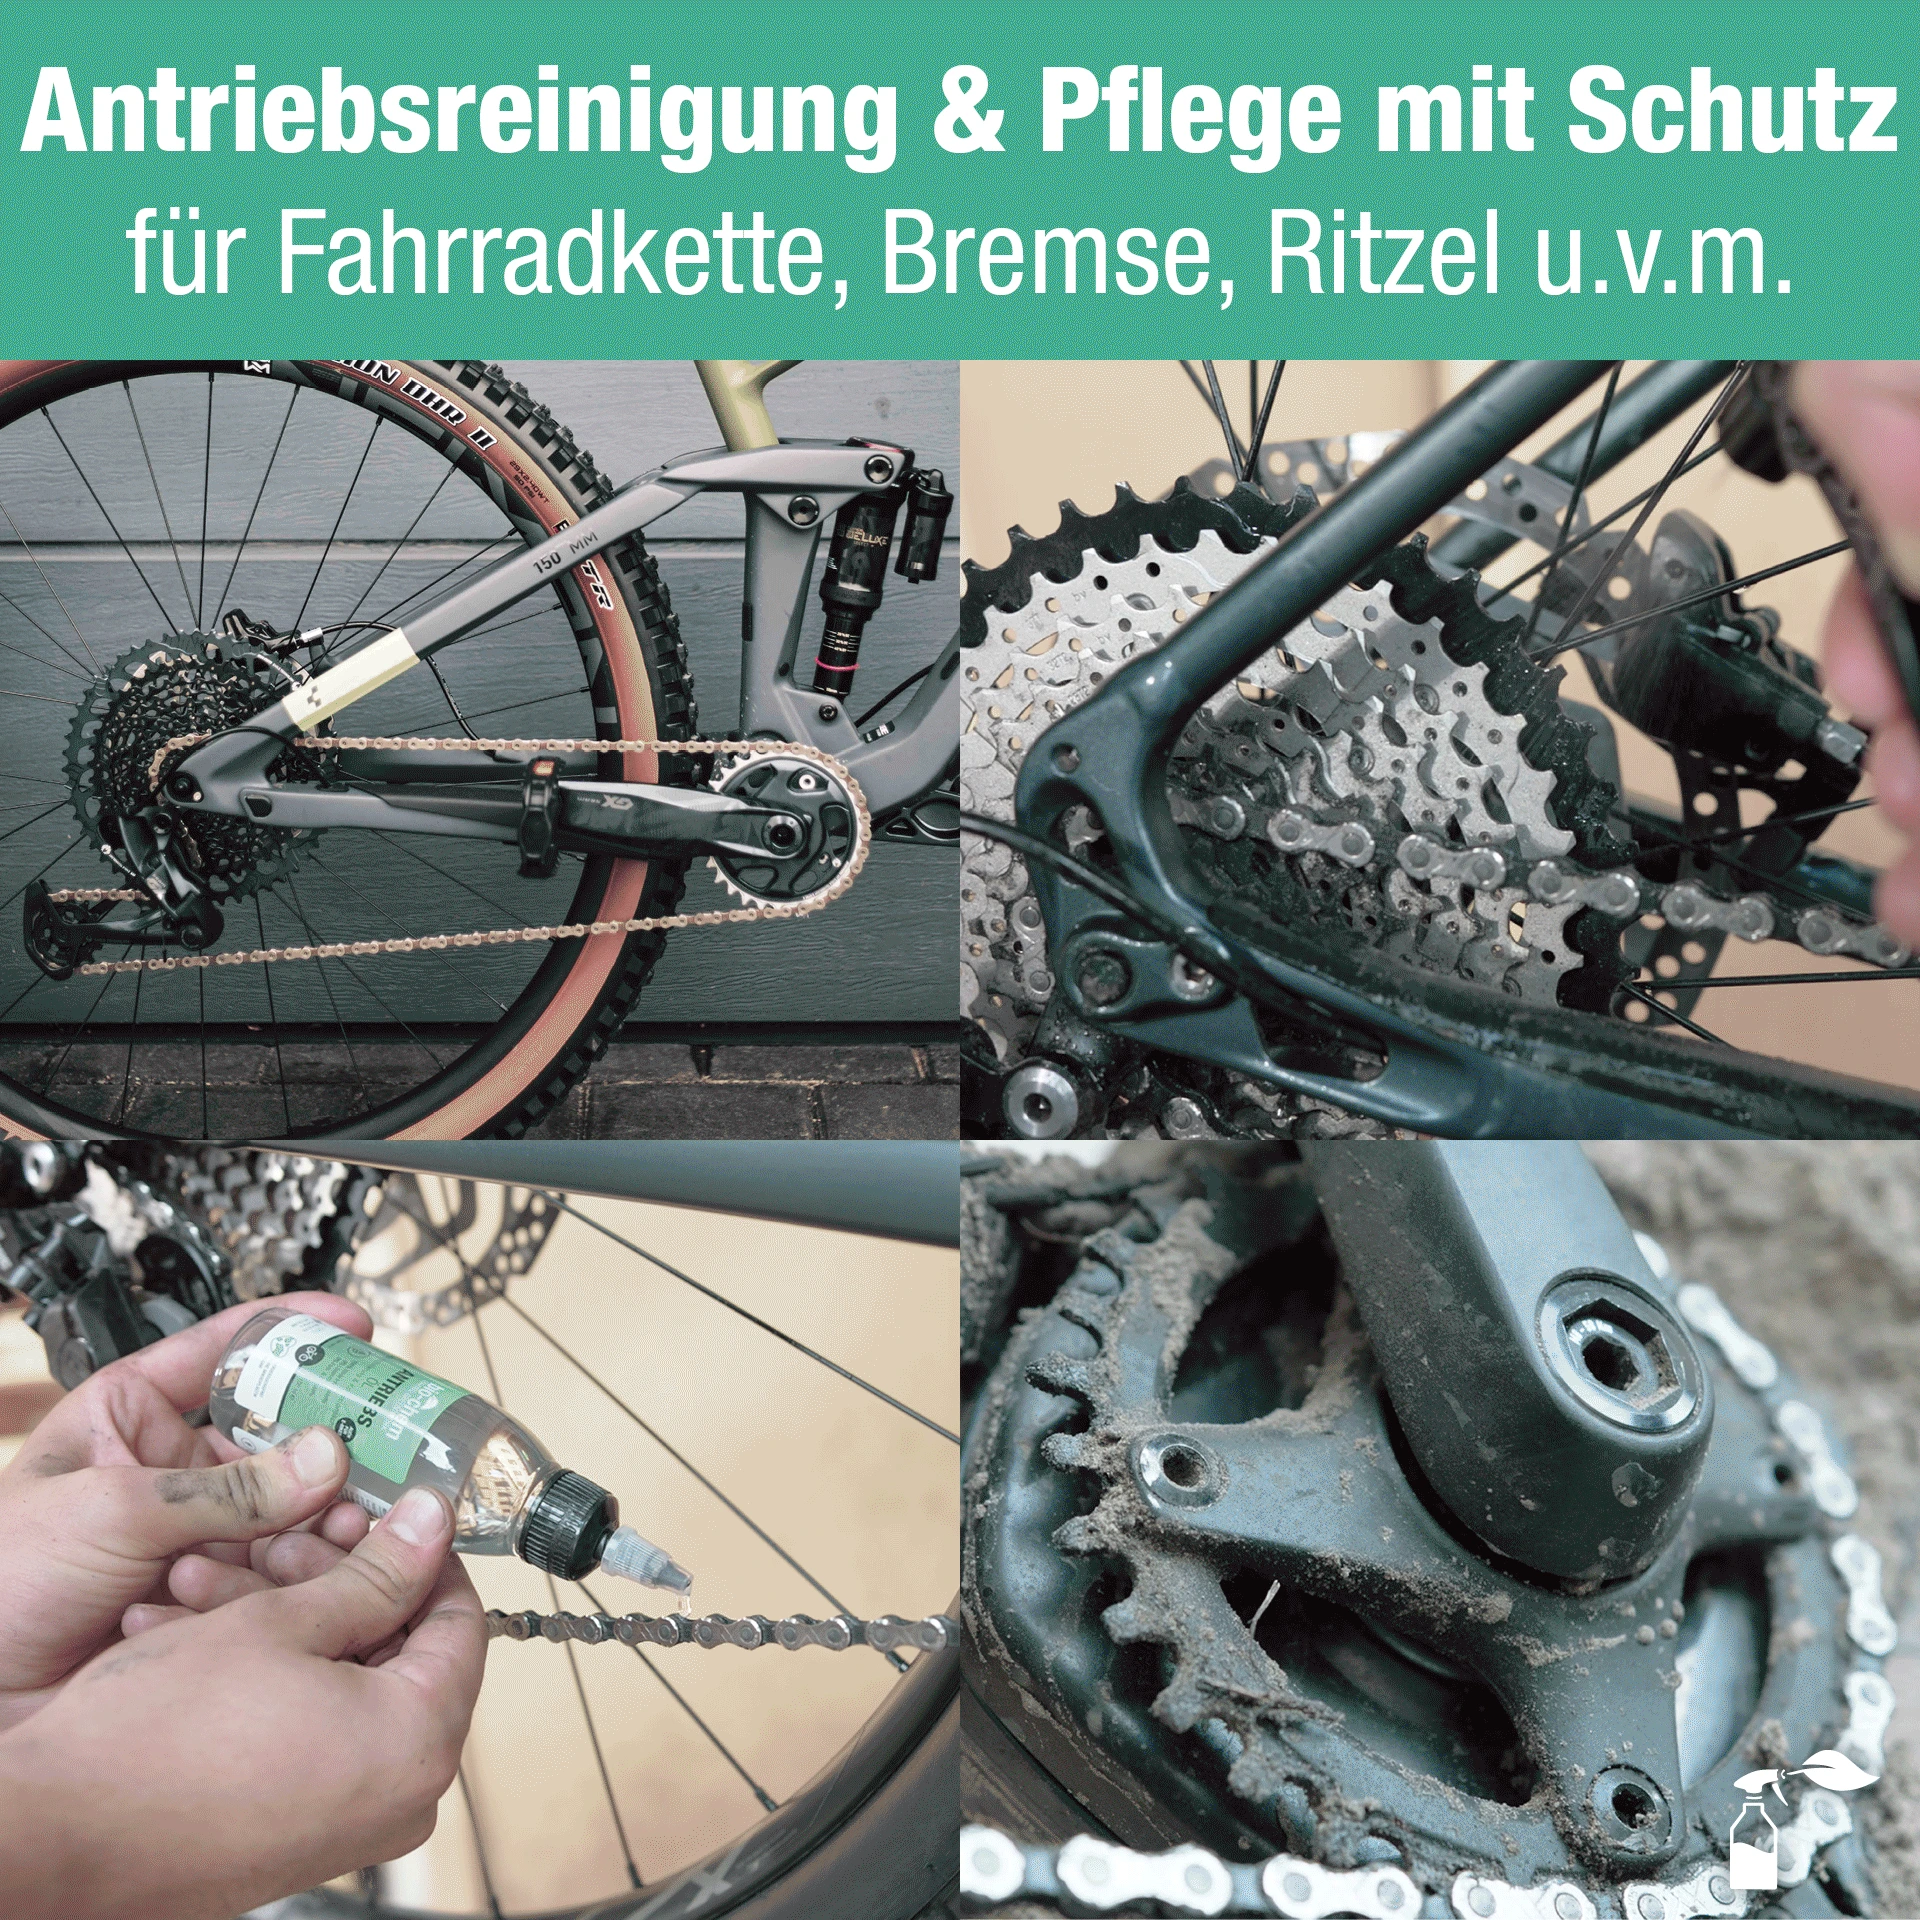 Für Fahrradkette, Rahmen, Bremse, Ritzel